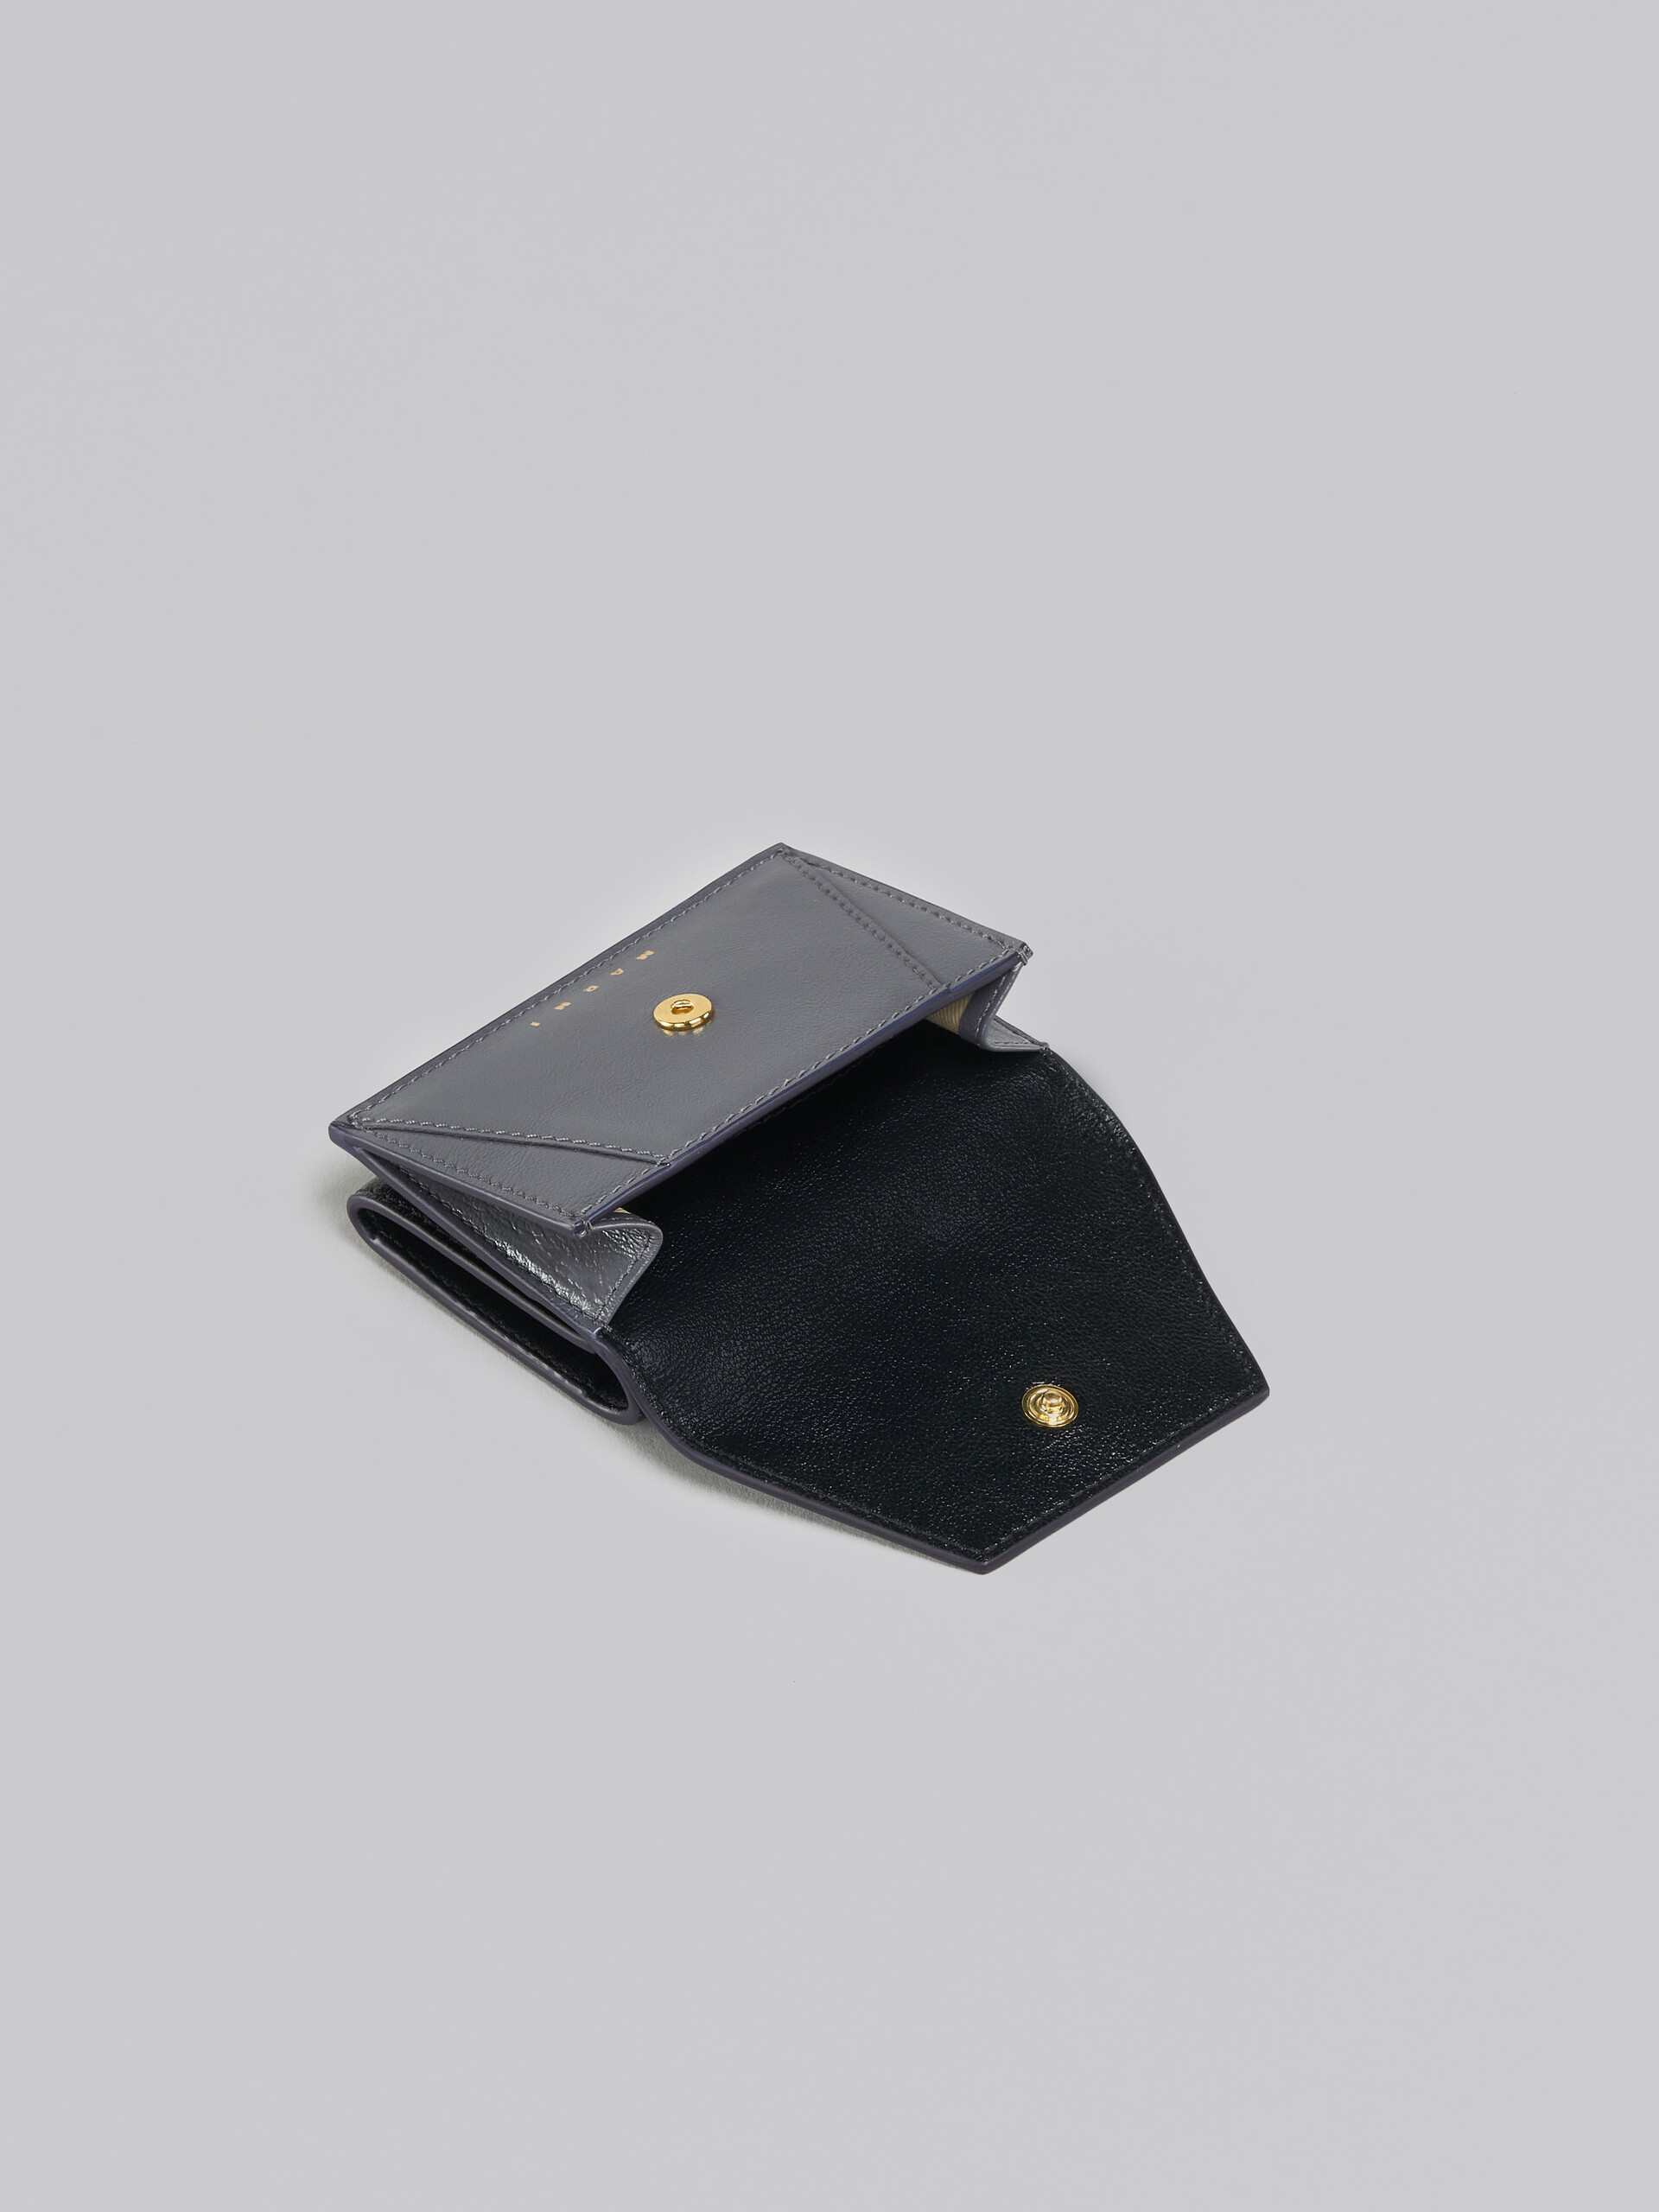 Dreifache Faltbrieftasche aus Leder in Grau und Schwarz - Brieftaschen - Image 5